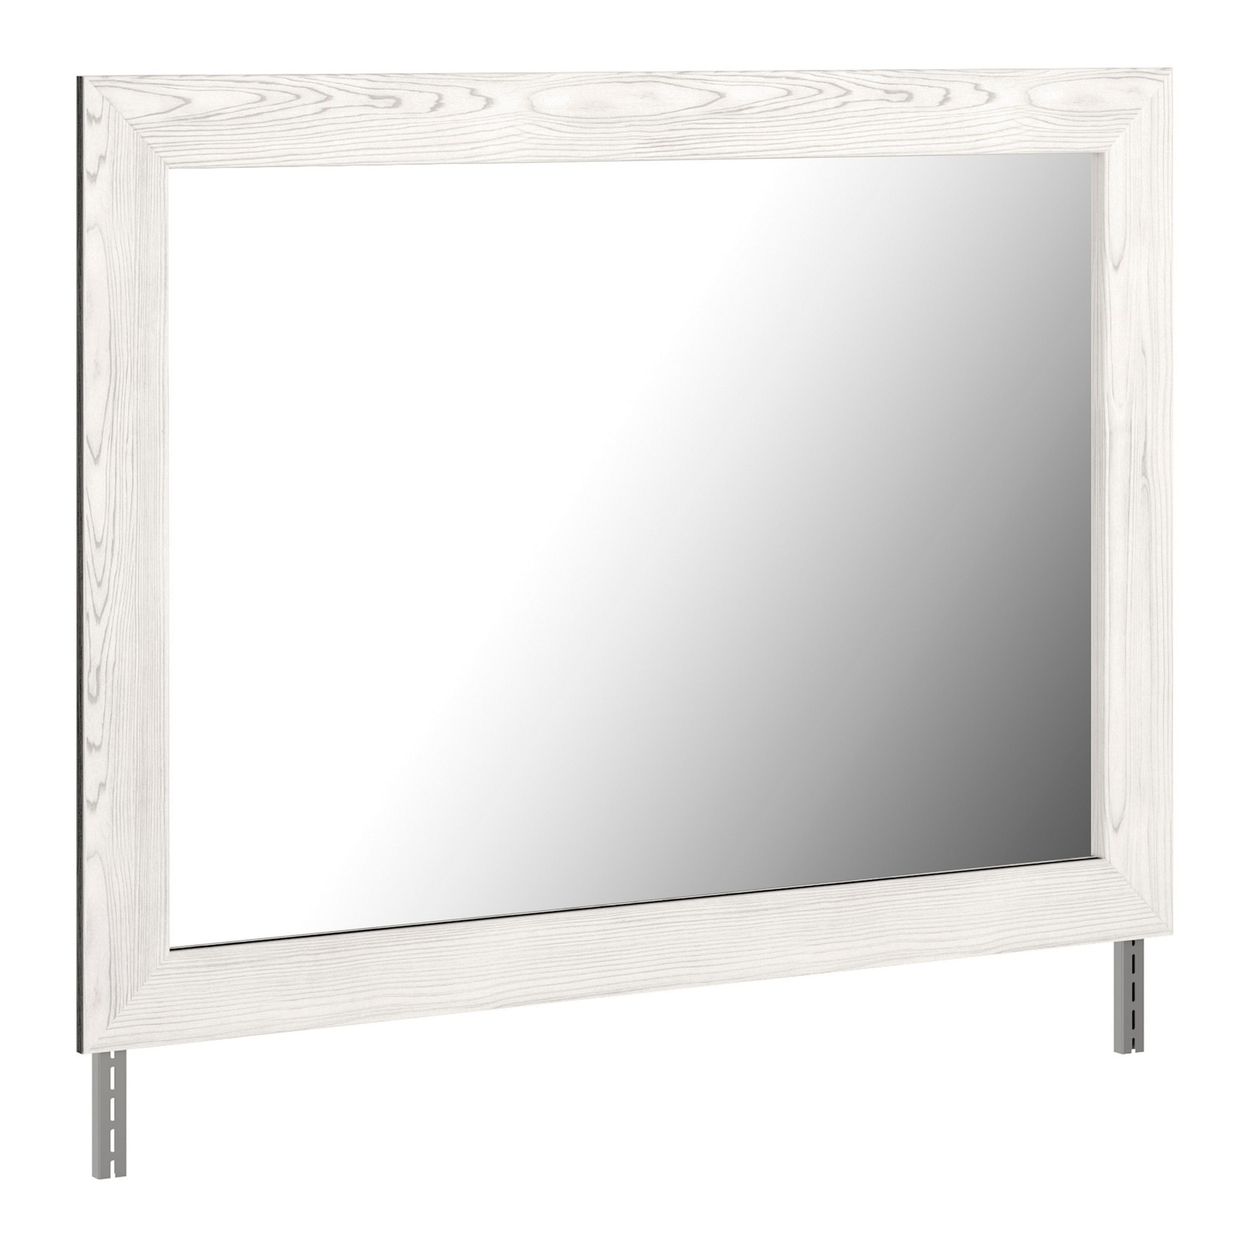 Rectangular Wooden Bedroom Mirror With Grain Details, Gray- Saltoro Sherpi